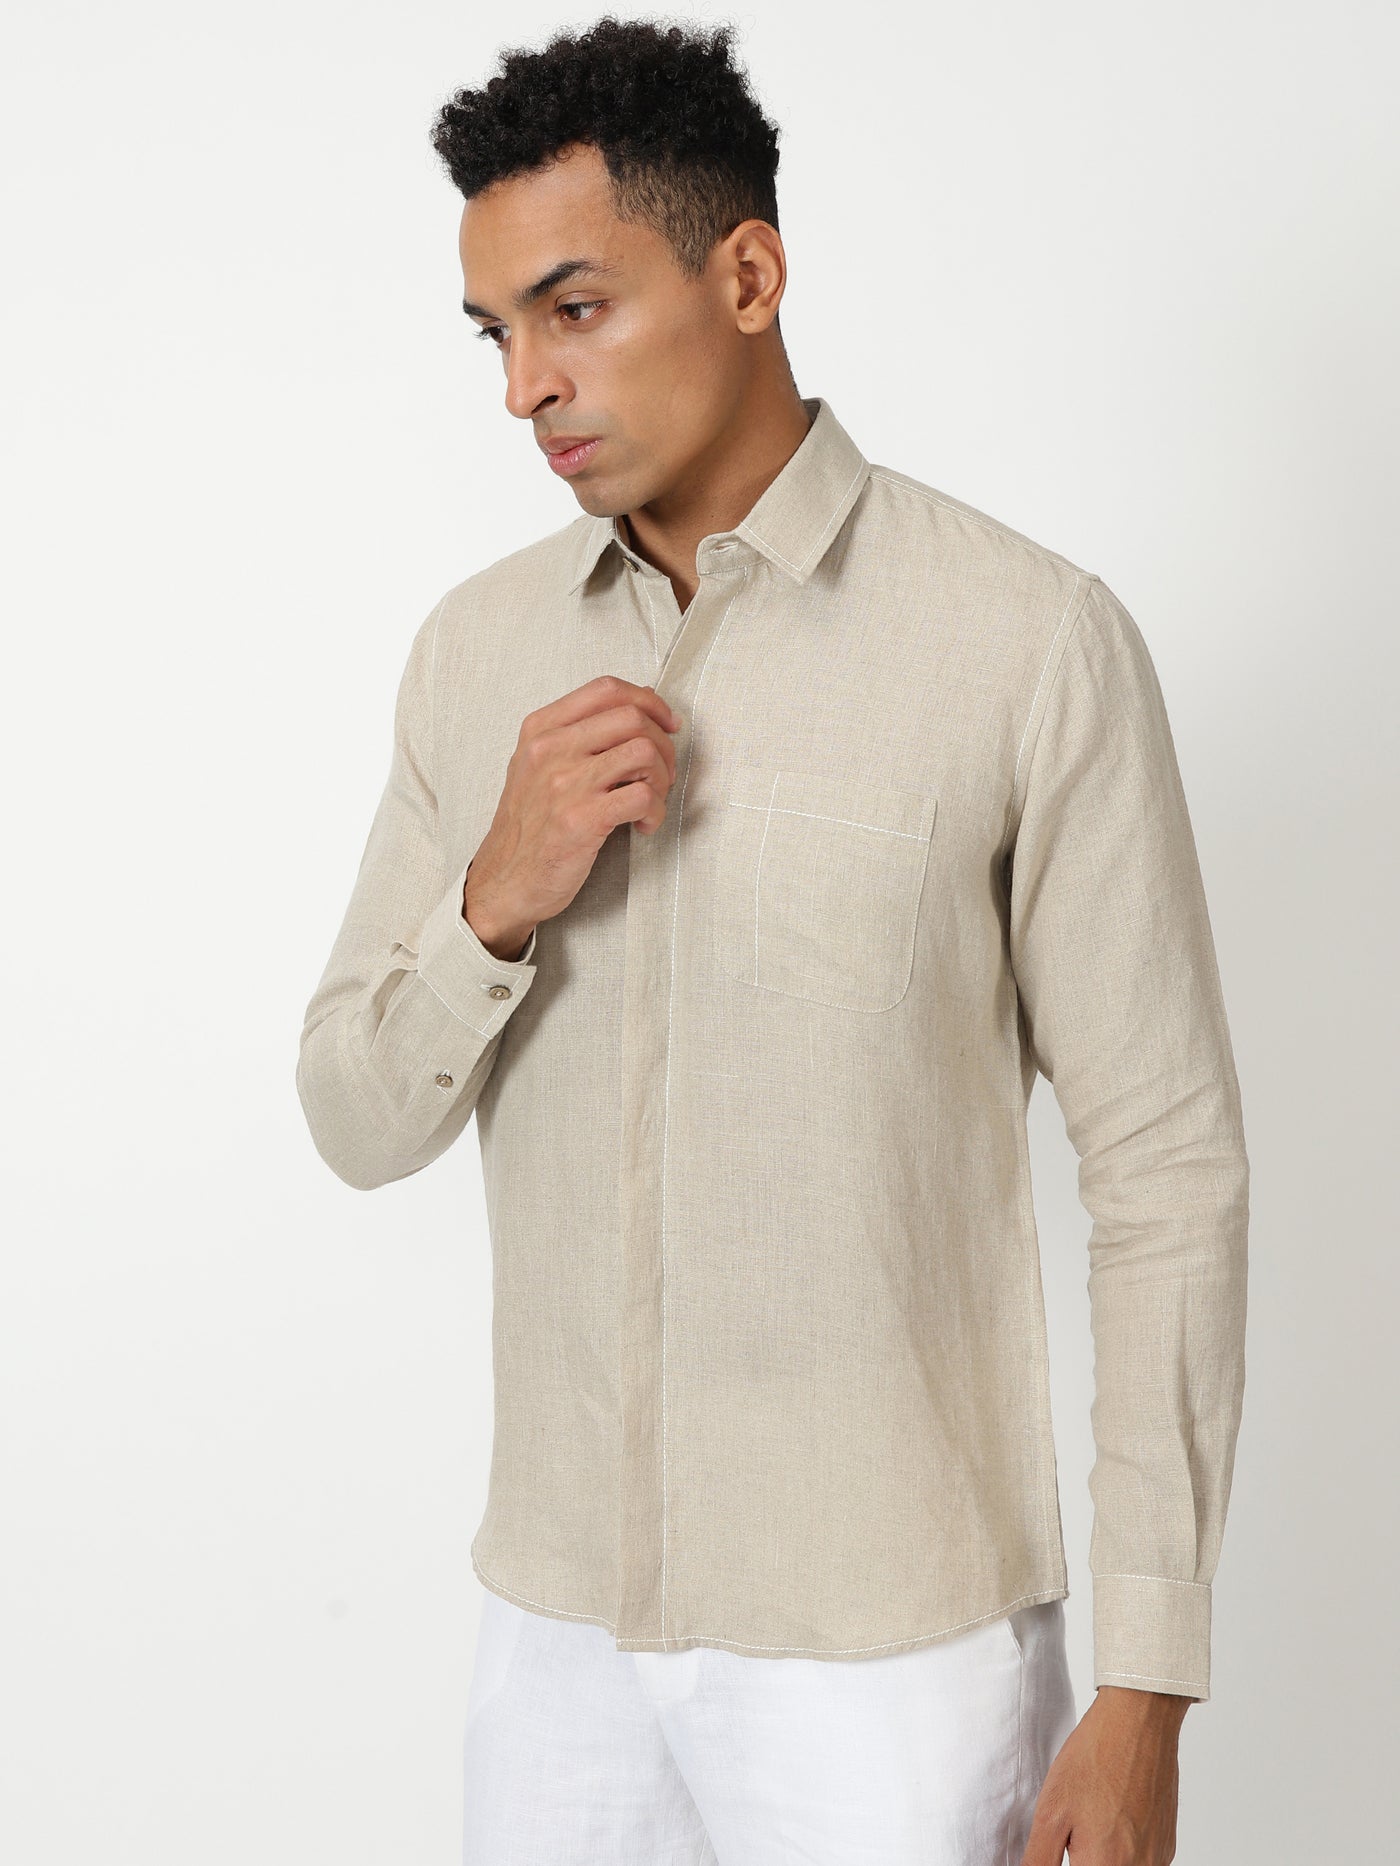 Paul - Pure Linen Stitch Detailed Full Sleeve Shirt - Dark Ecru